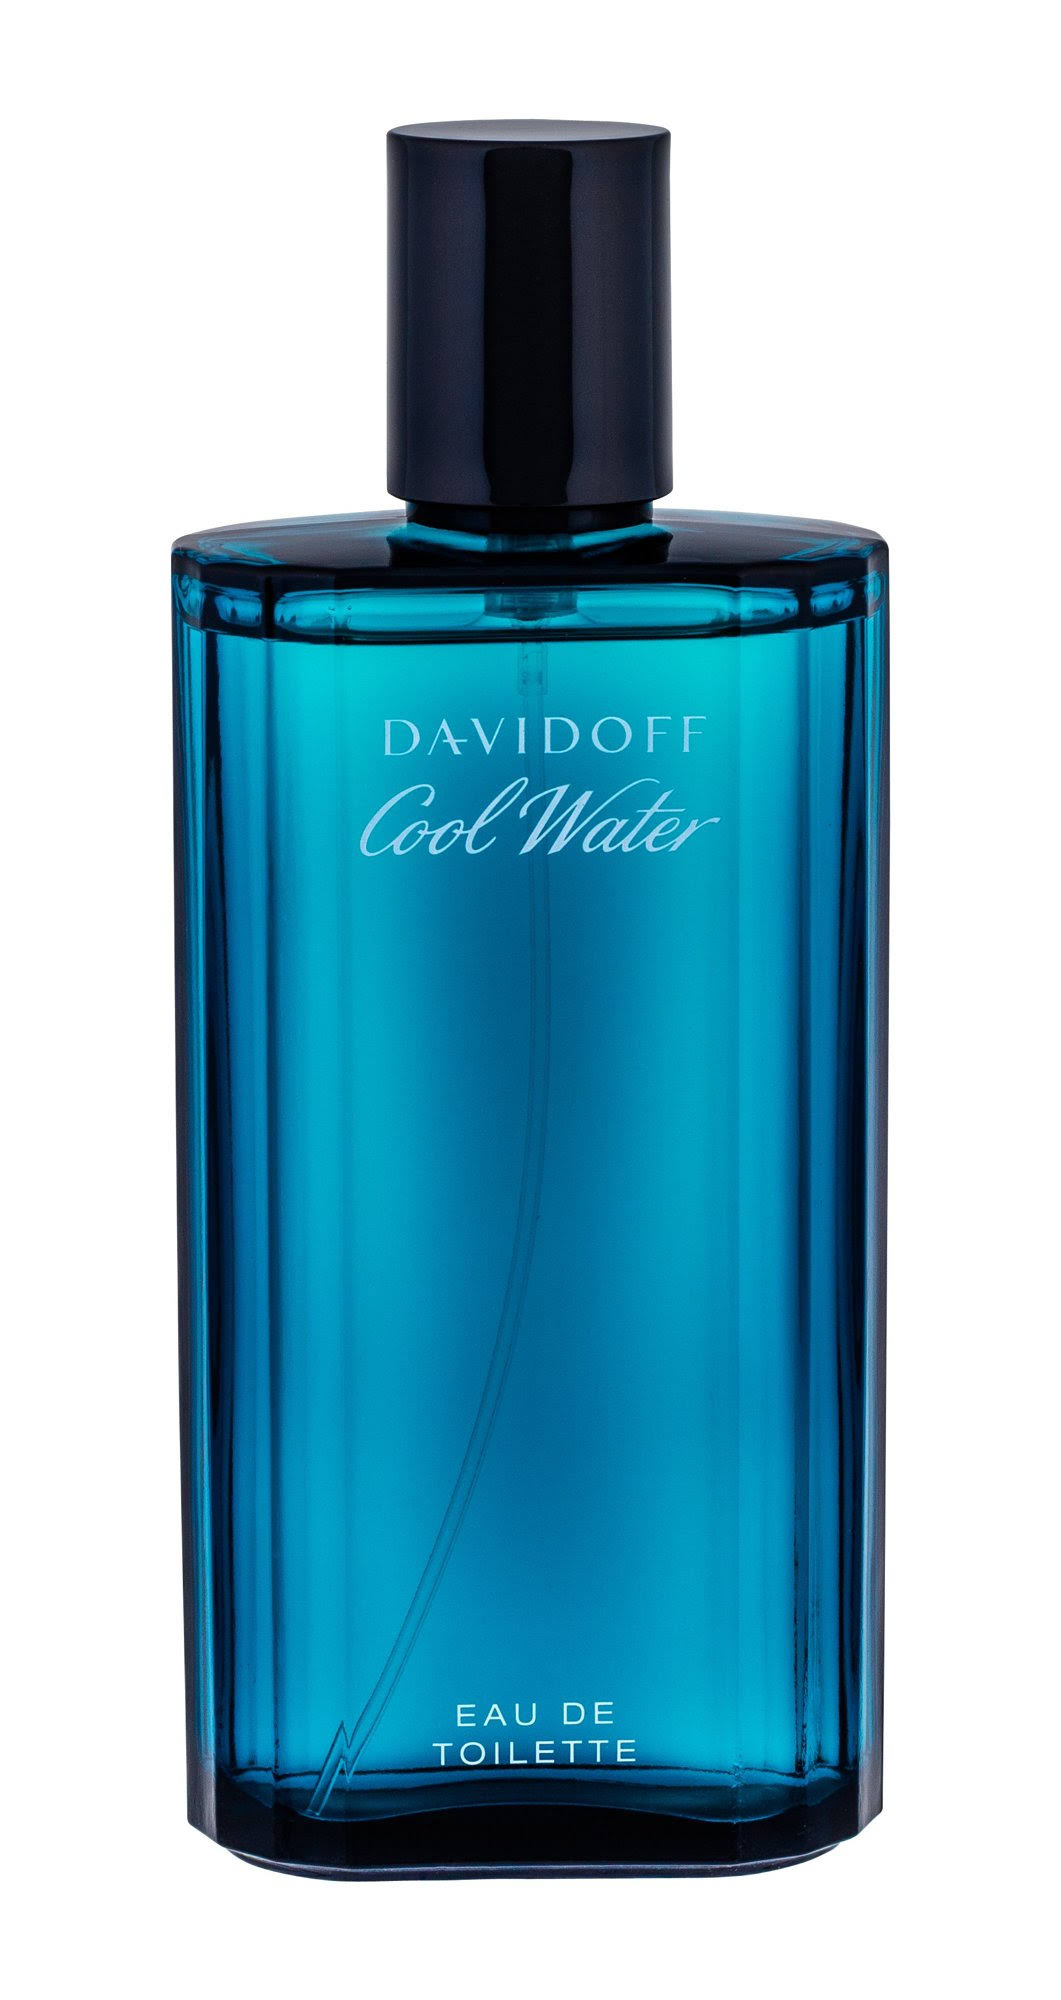 Cool Water by Davidoff Eau de Toilette Spray for Men - 4.2 fl oz bottle